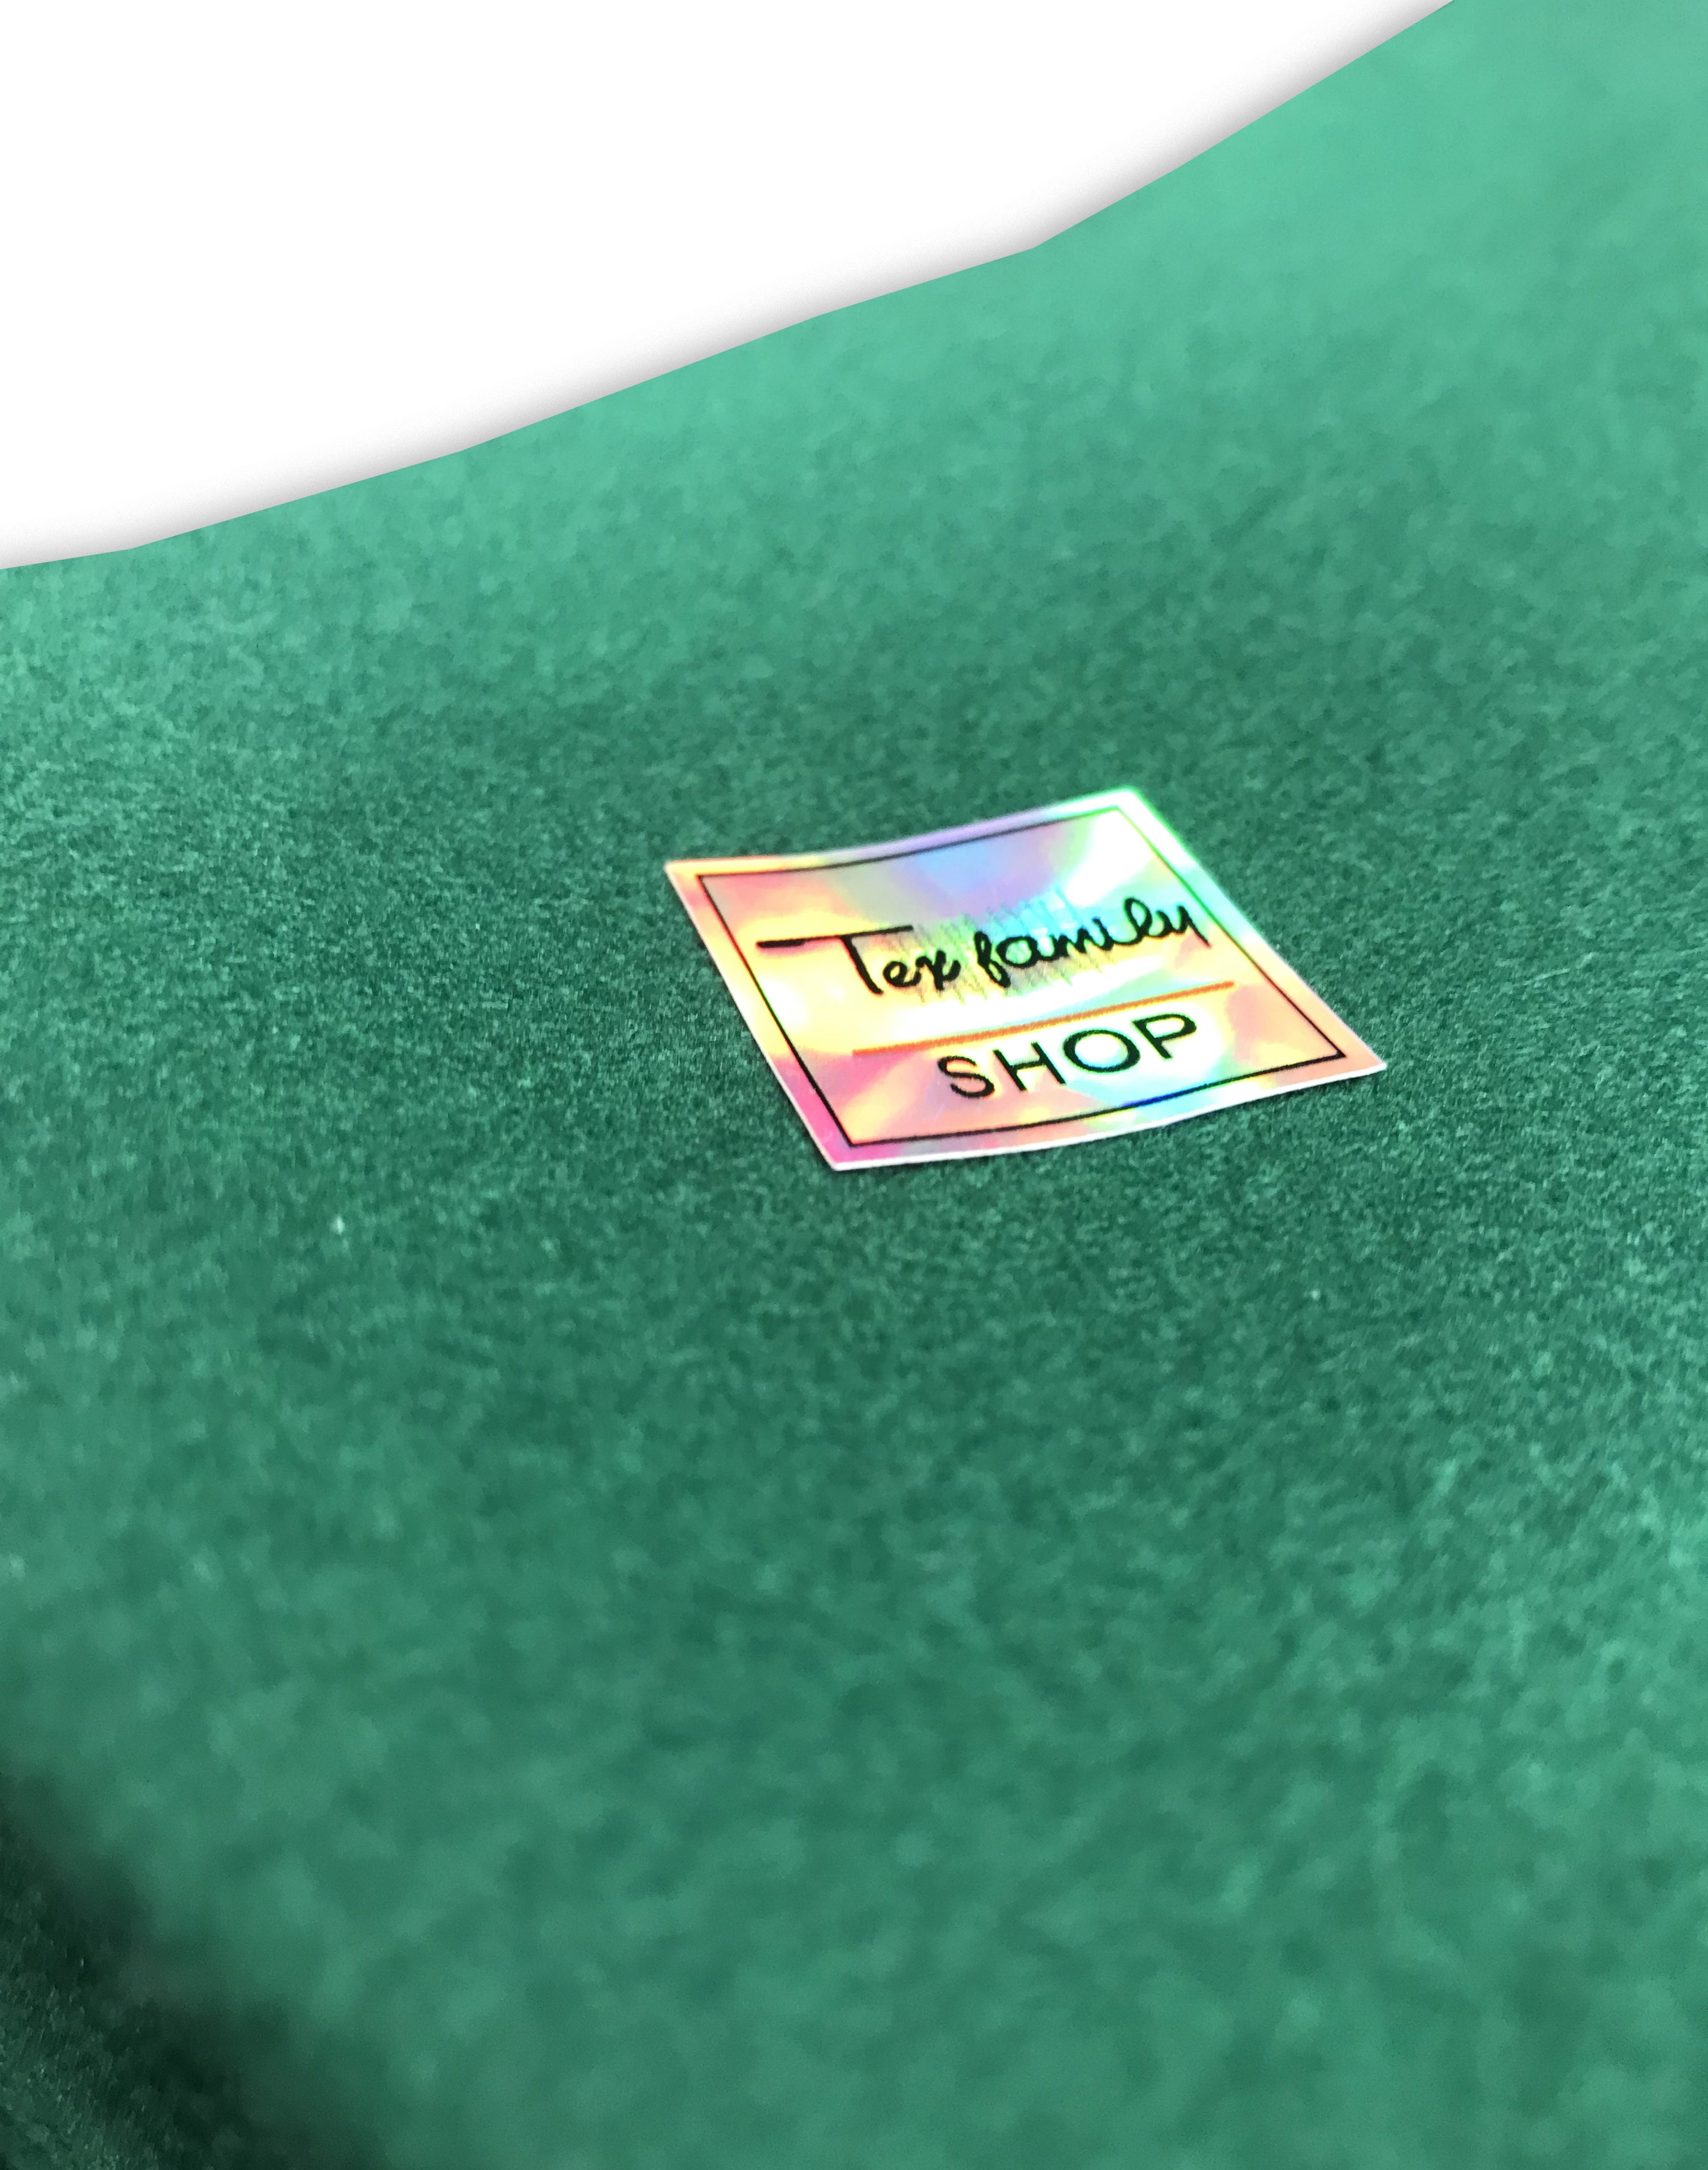 Copritavolo panno verde per tavolo da gioco rettangolare - 140x240 cm M388